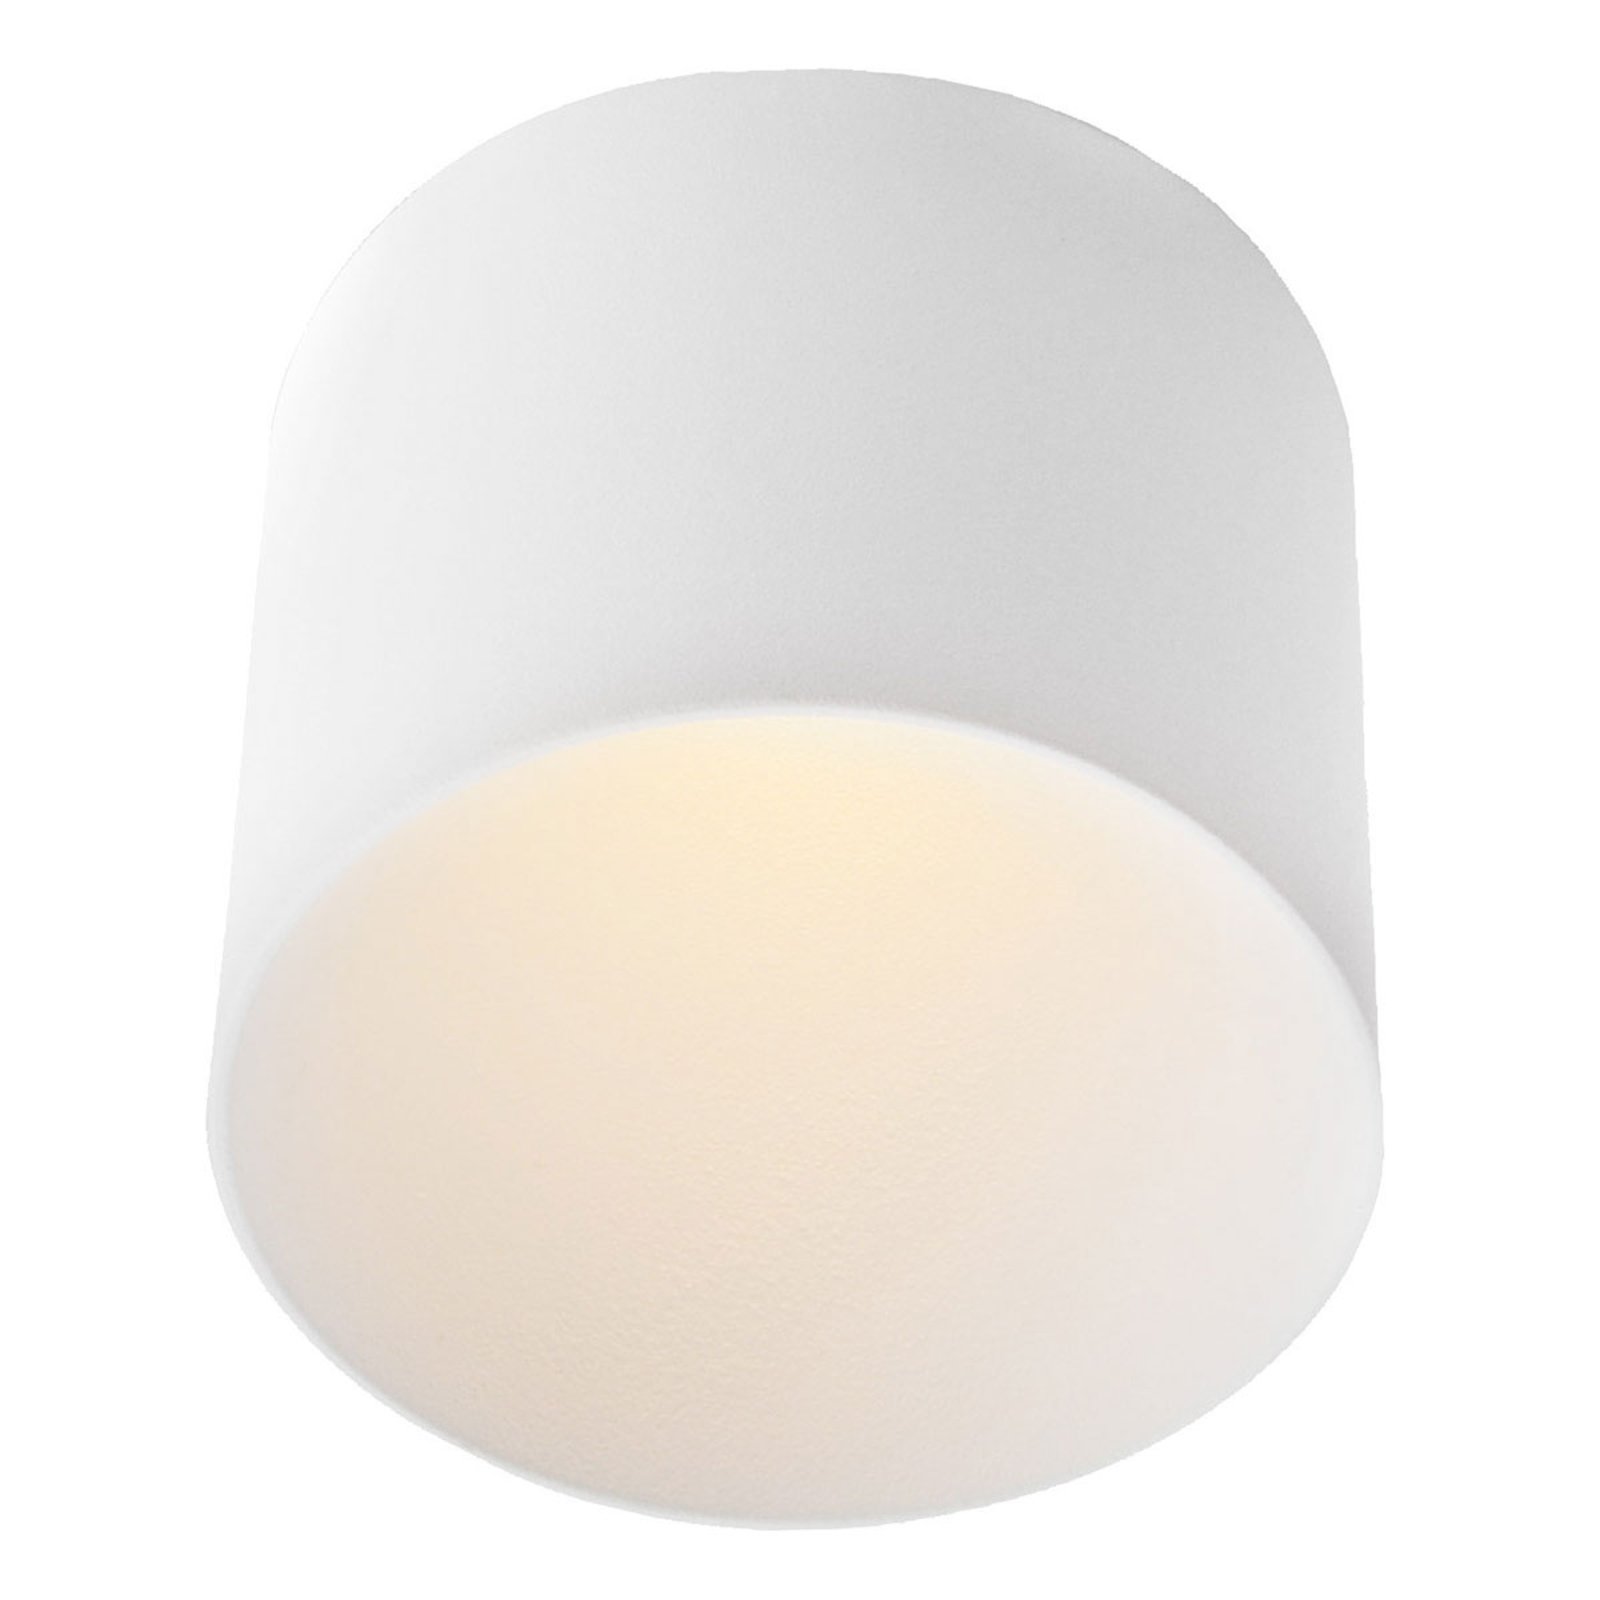 GF design Tubo lámpara empotrada blanca 3.000 K